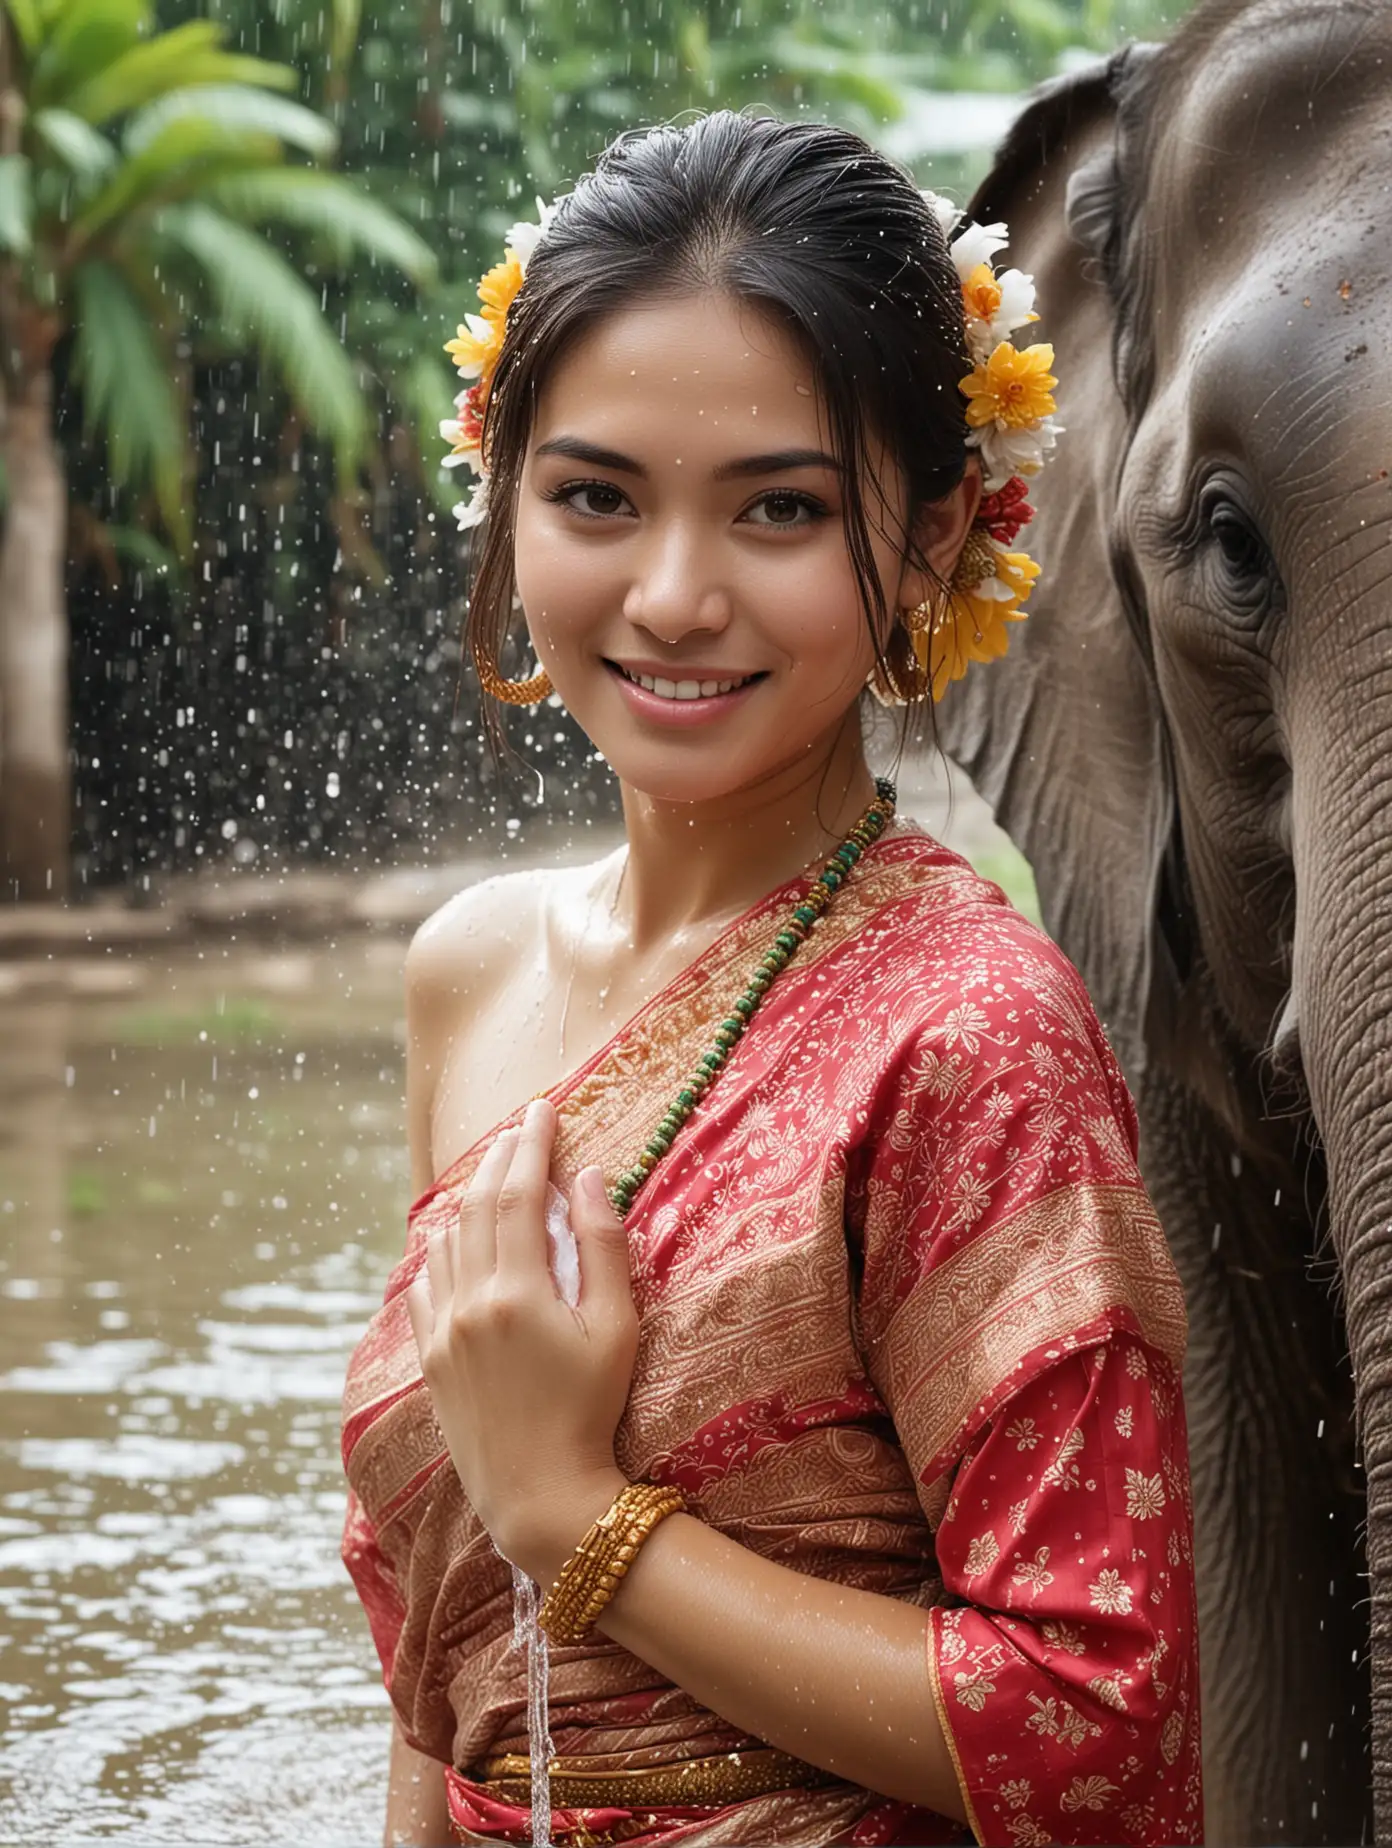 Thai Girl Model Celebrating Water Songkran Festival with Elephant